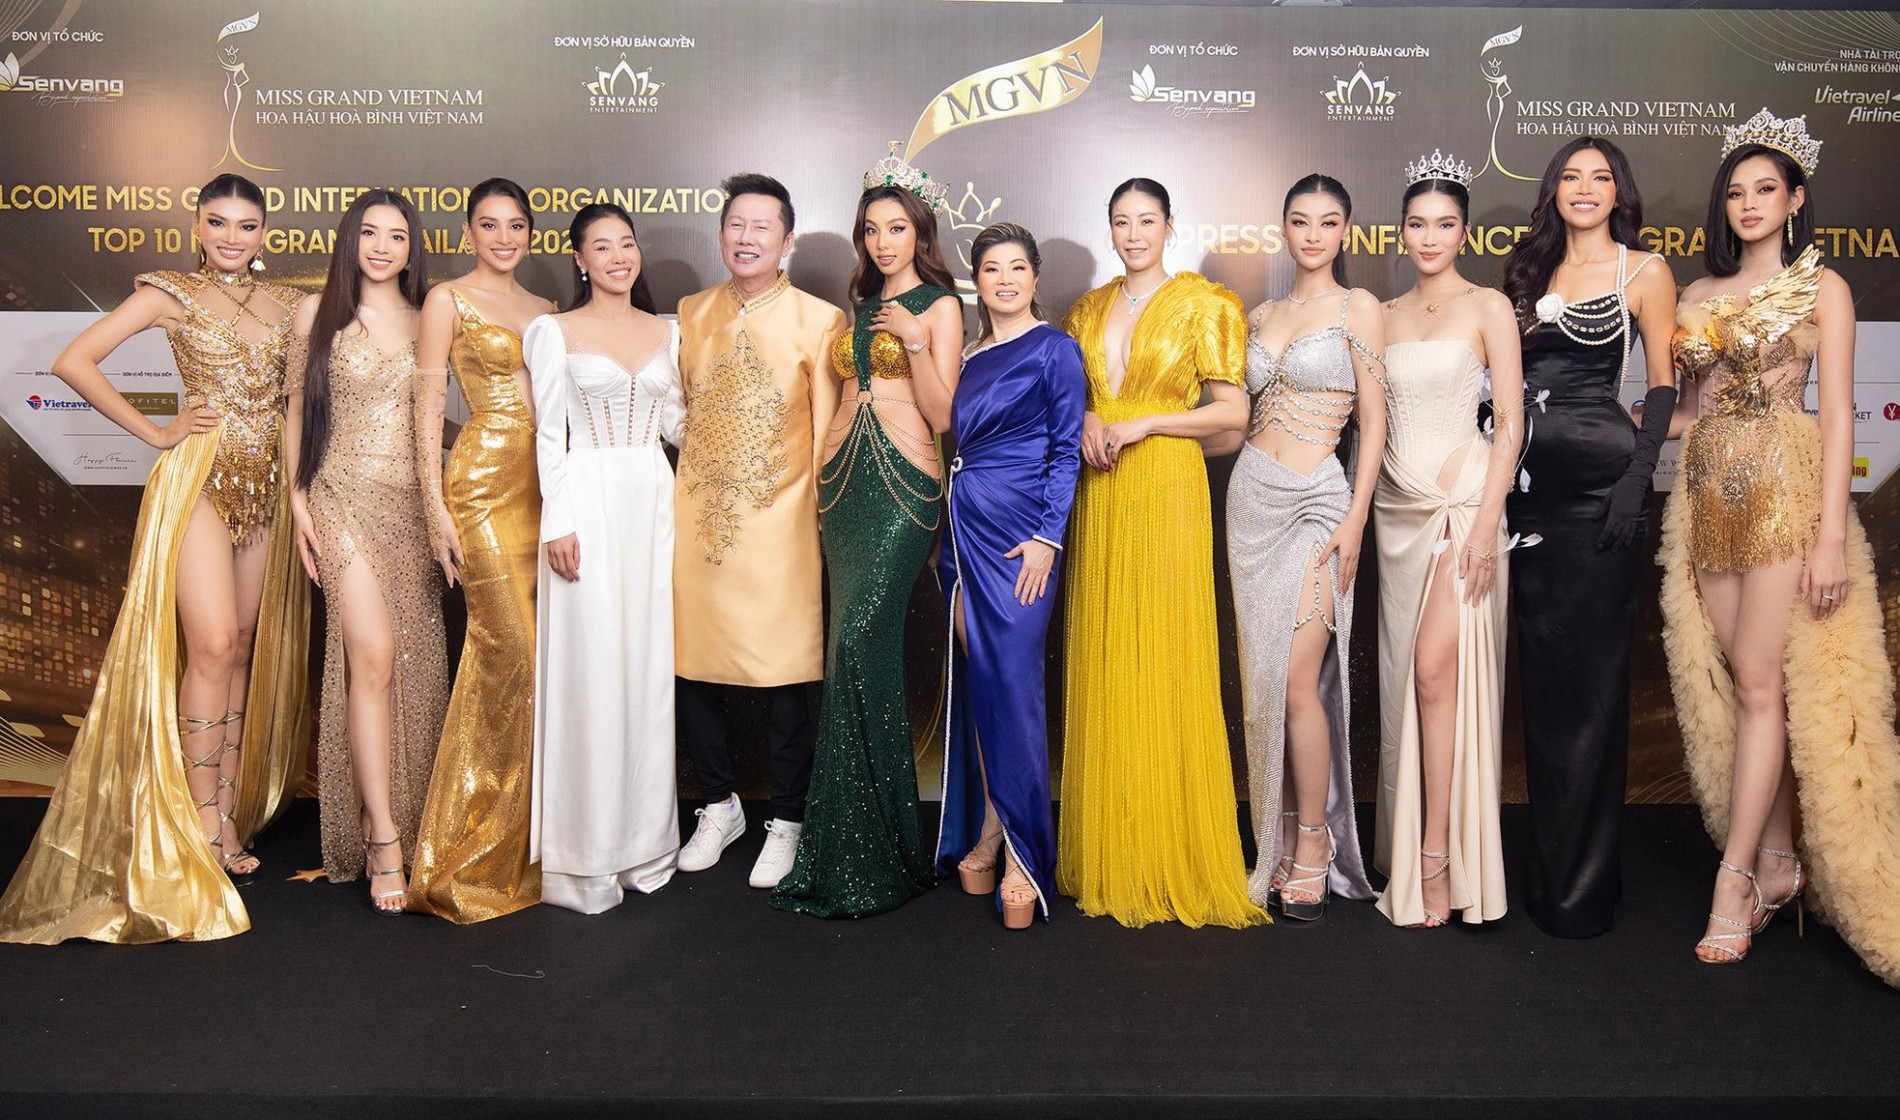 Gạt bỏ ồn ào, chủ tịch Miss Grand International thông báo đến Việt Nam - ảnh 2